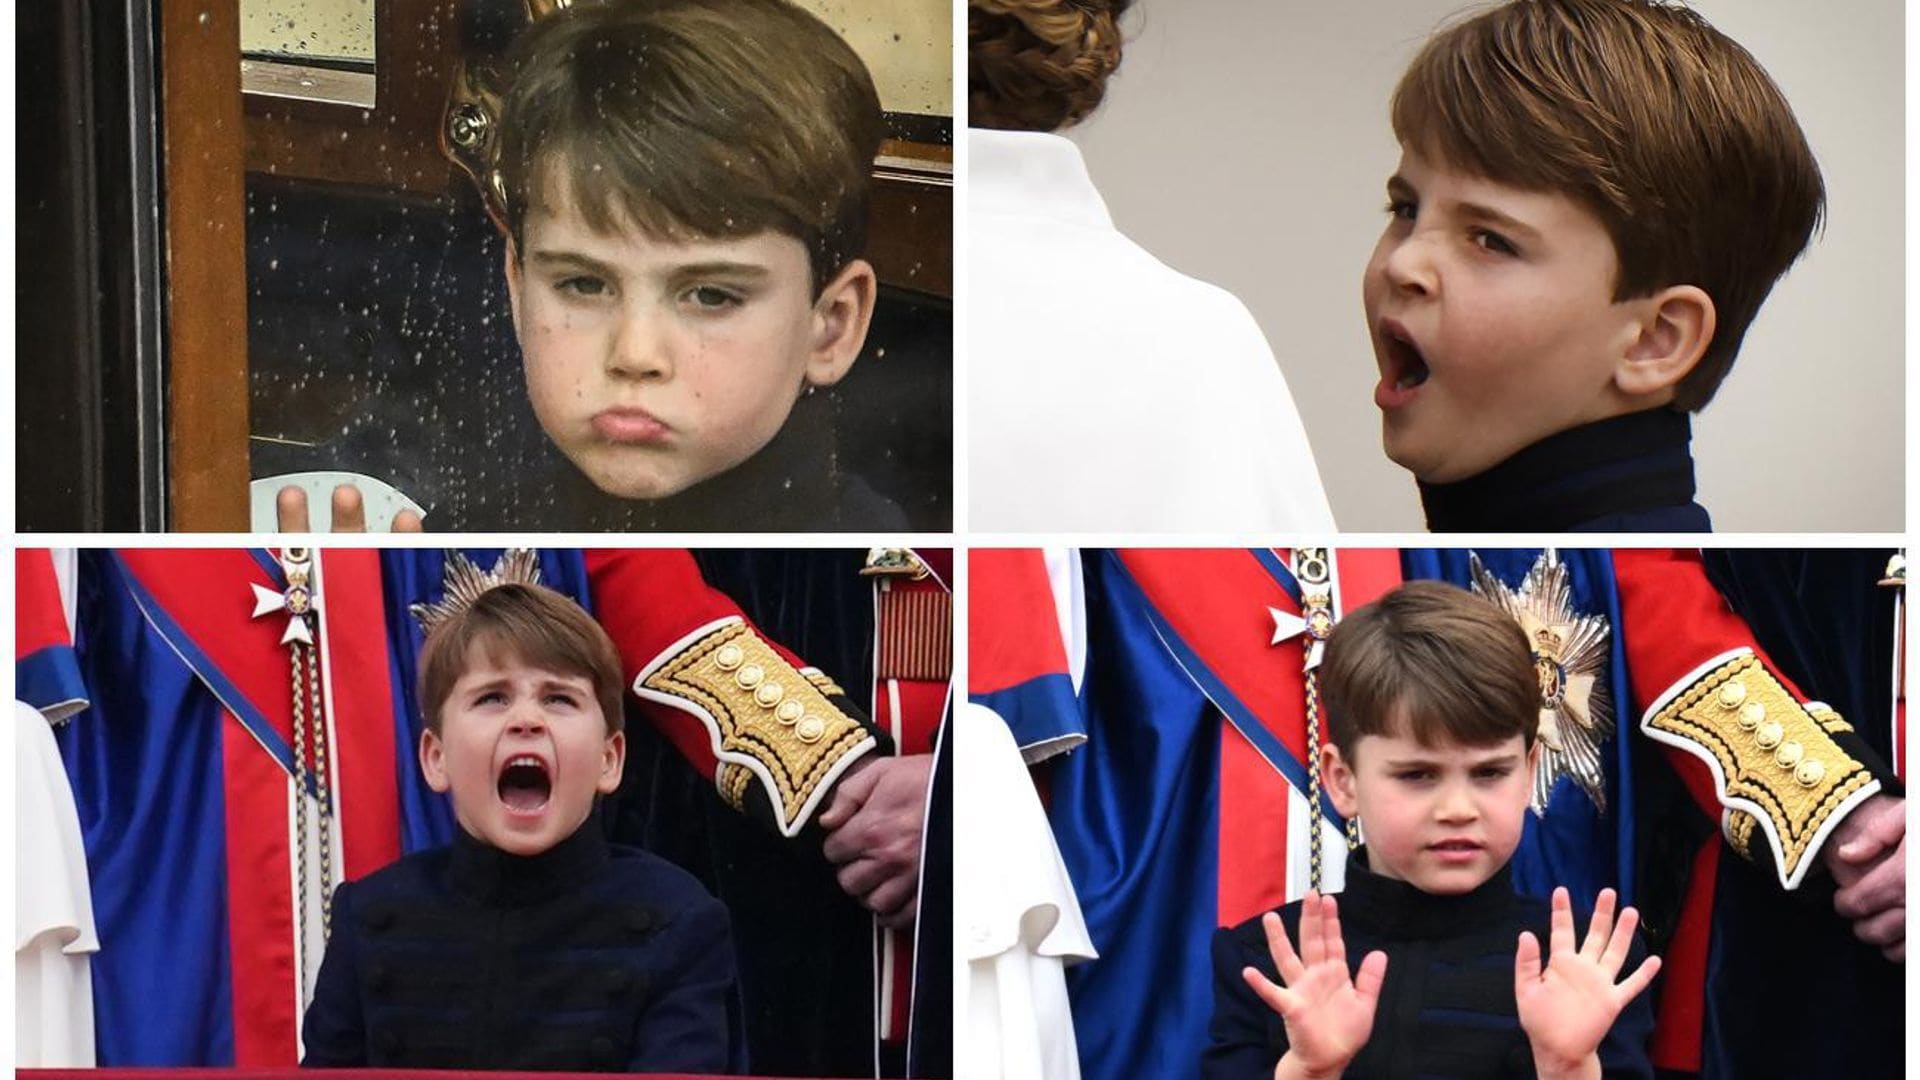 Los graciosos gestos del príncipe Louis en la coronación del rey Carlos III y otros curiosos momentos